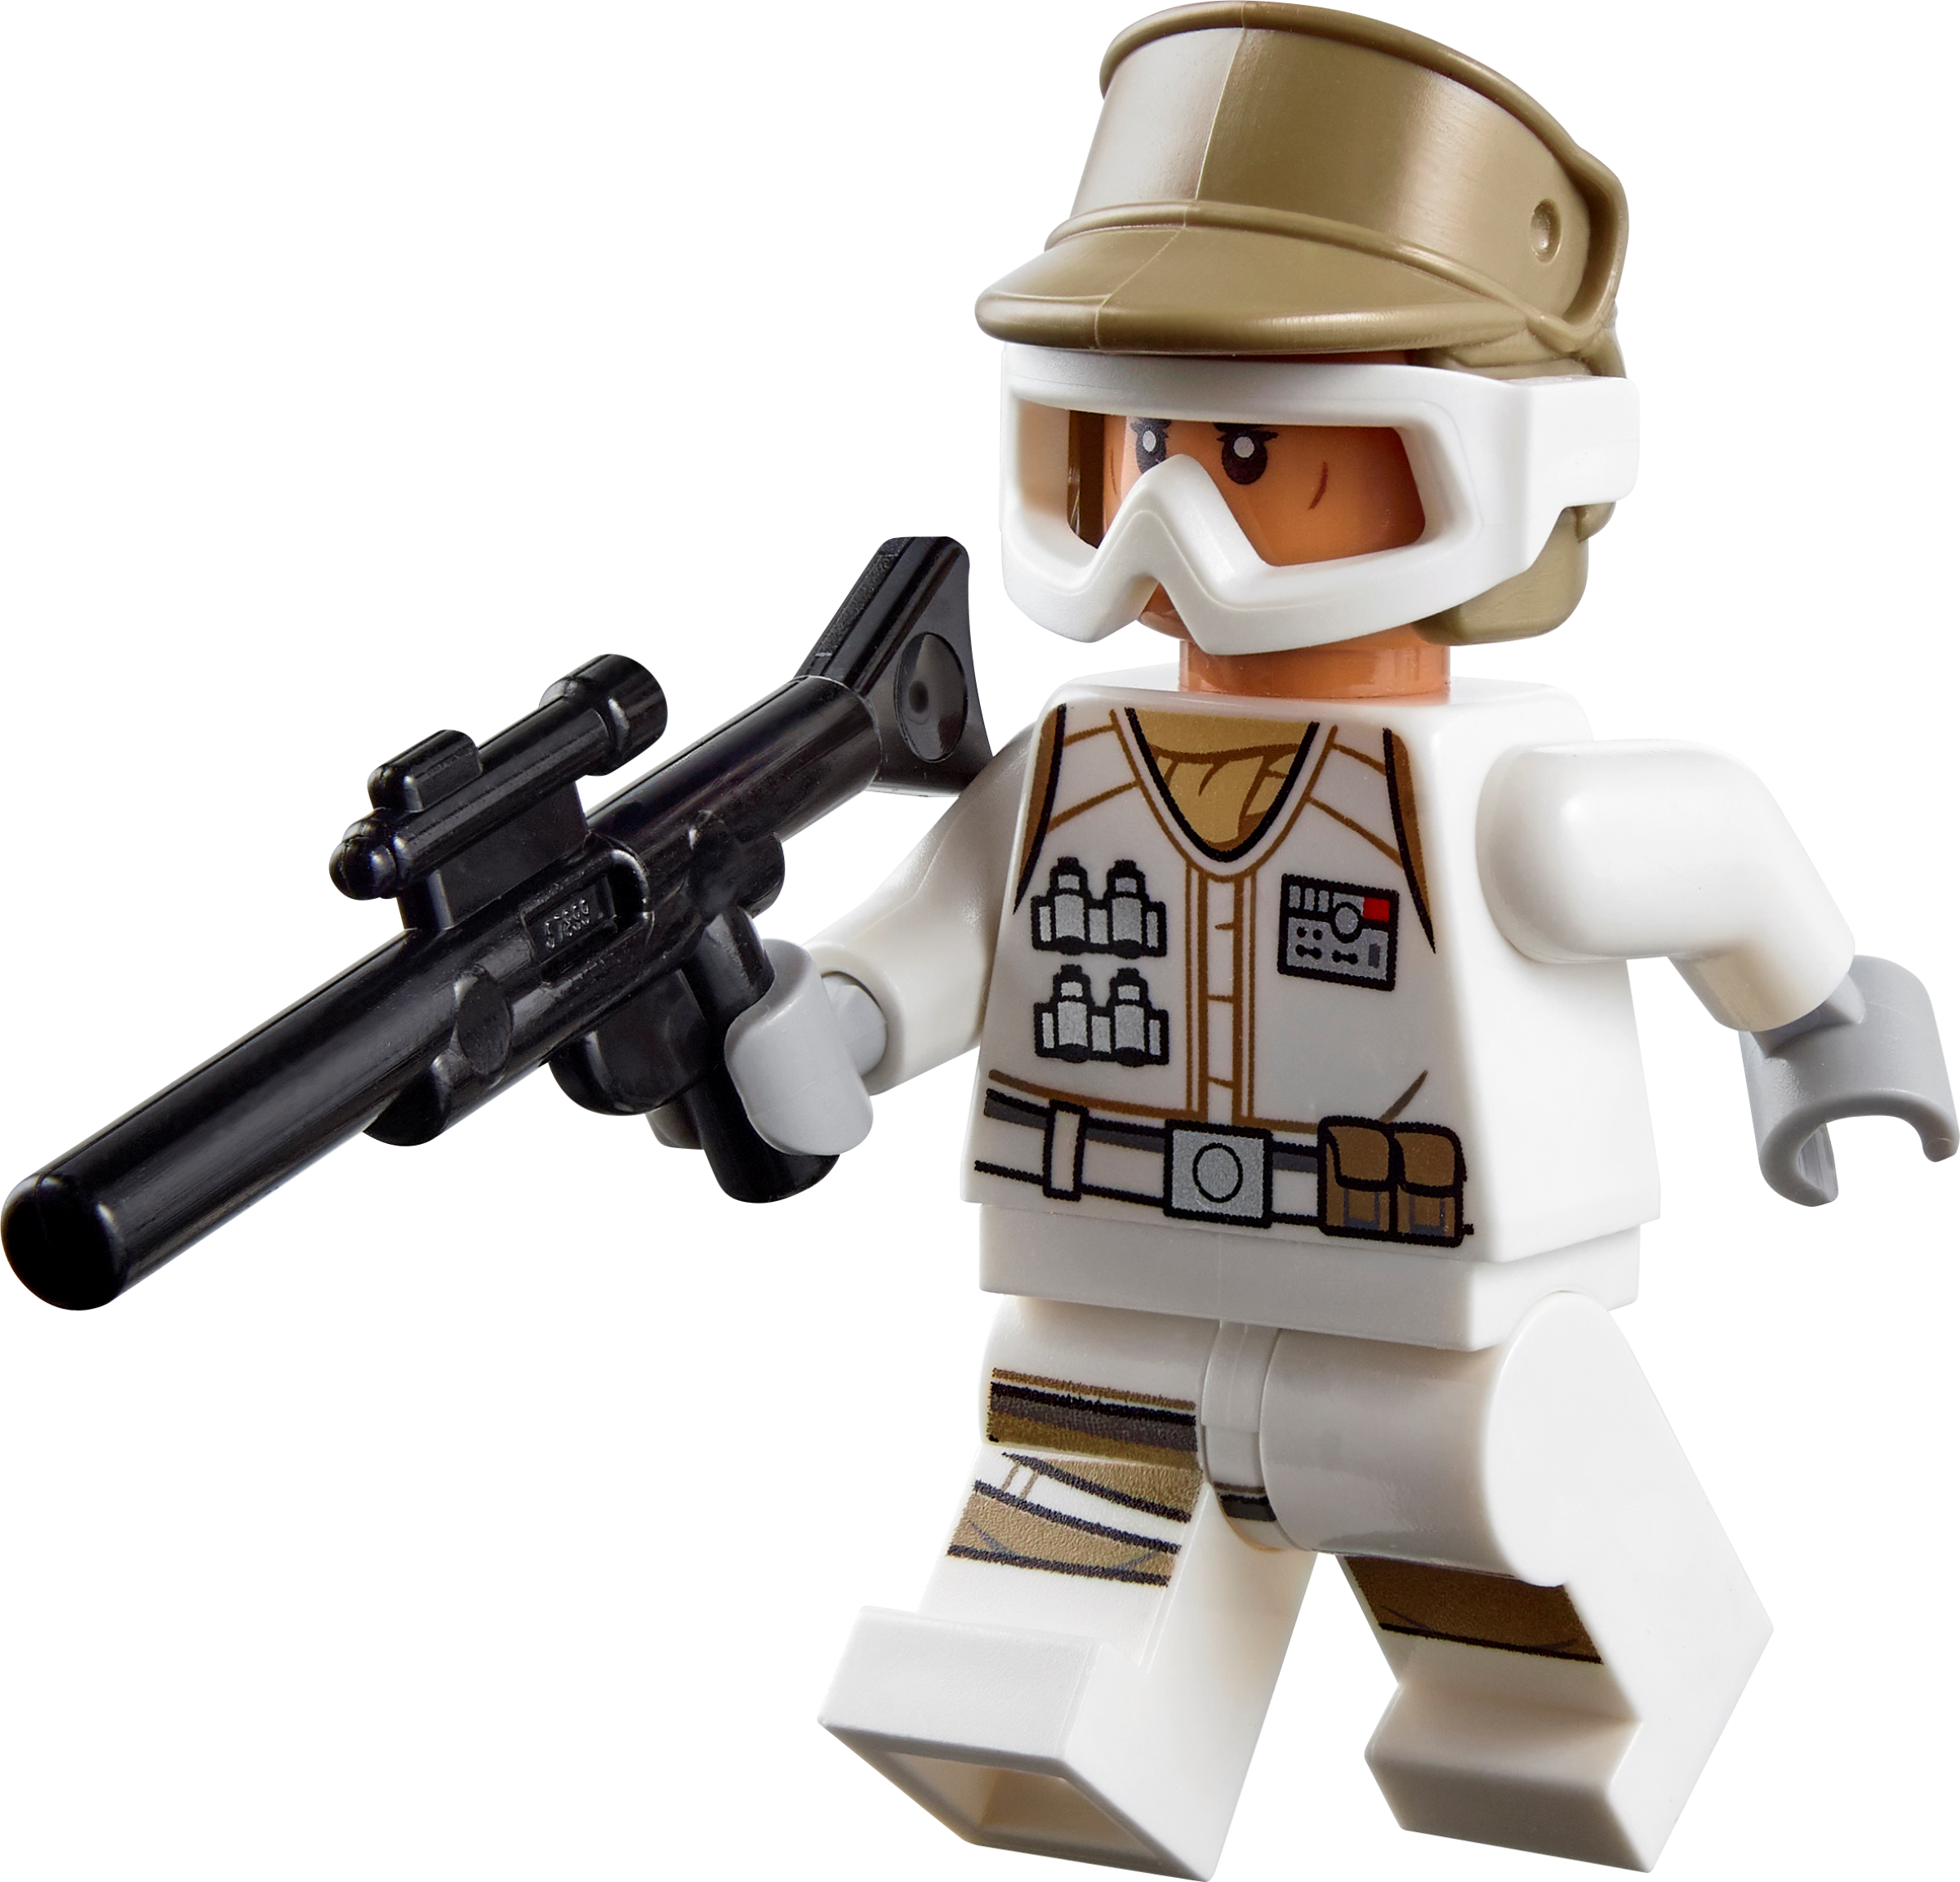 .com: lego army  Lego army, Lego soldiers, Lego creative